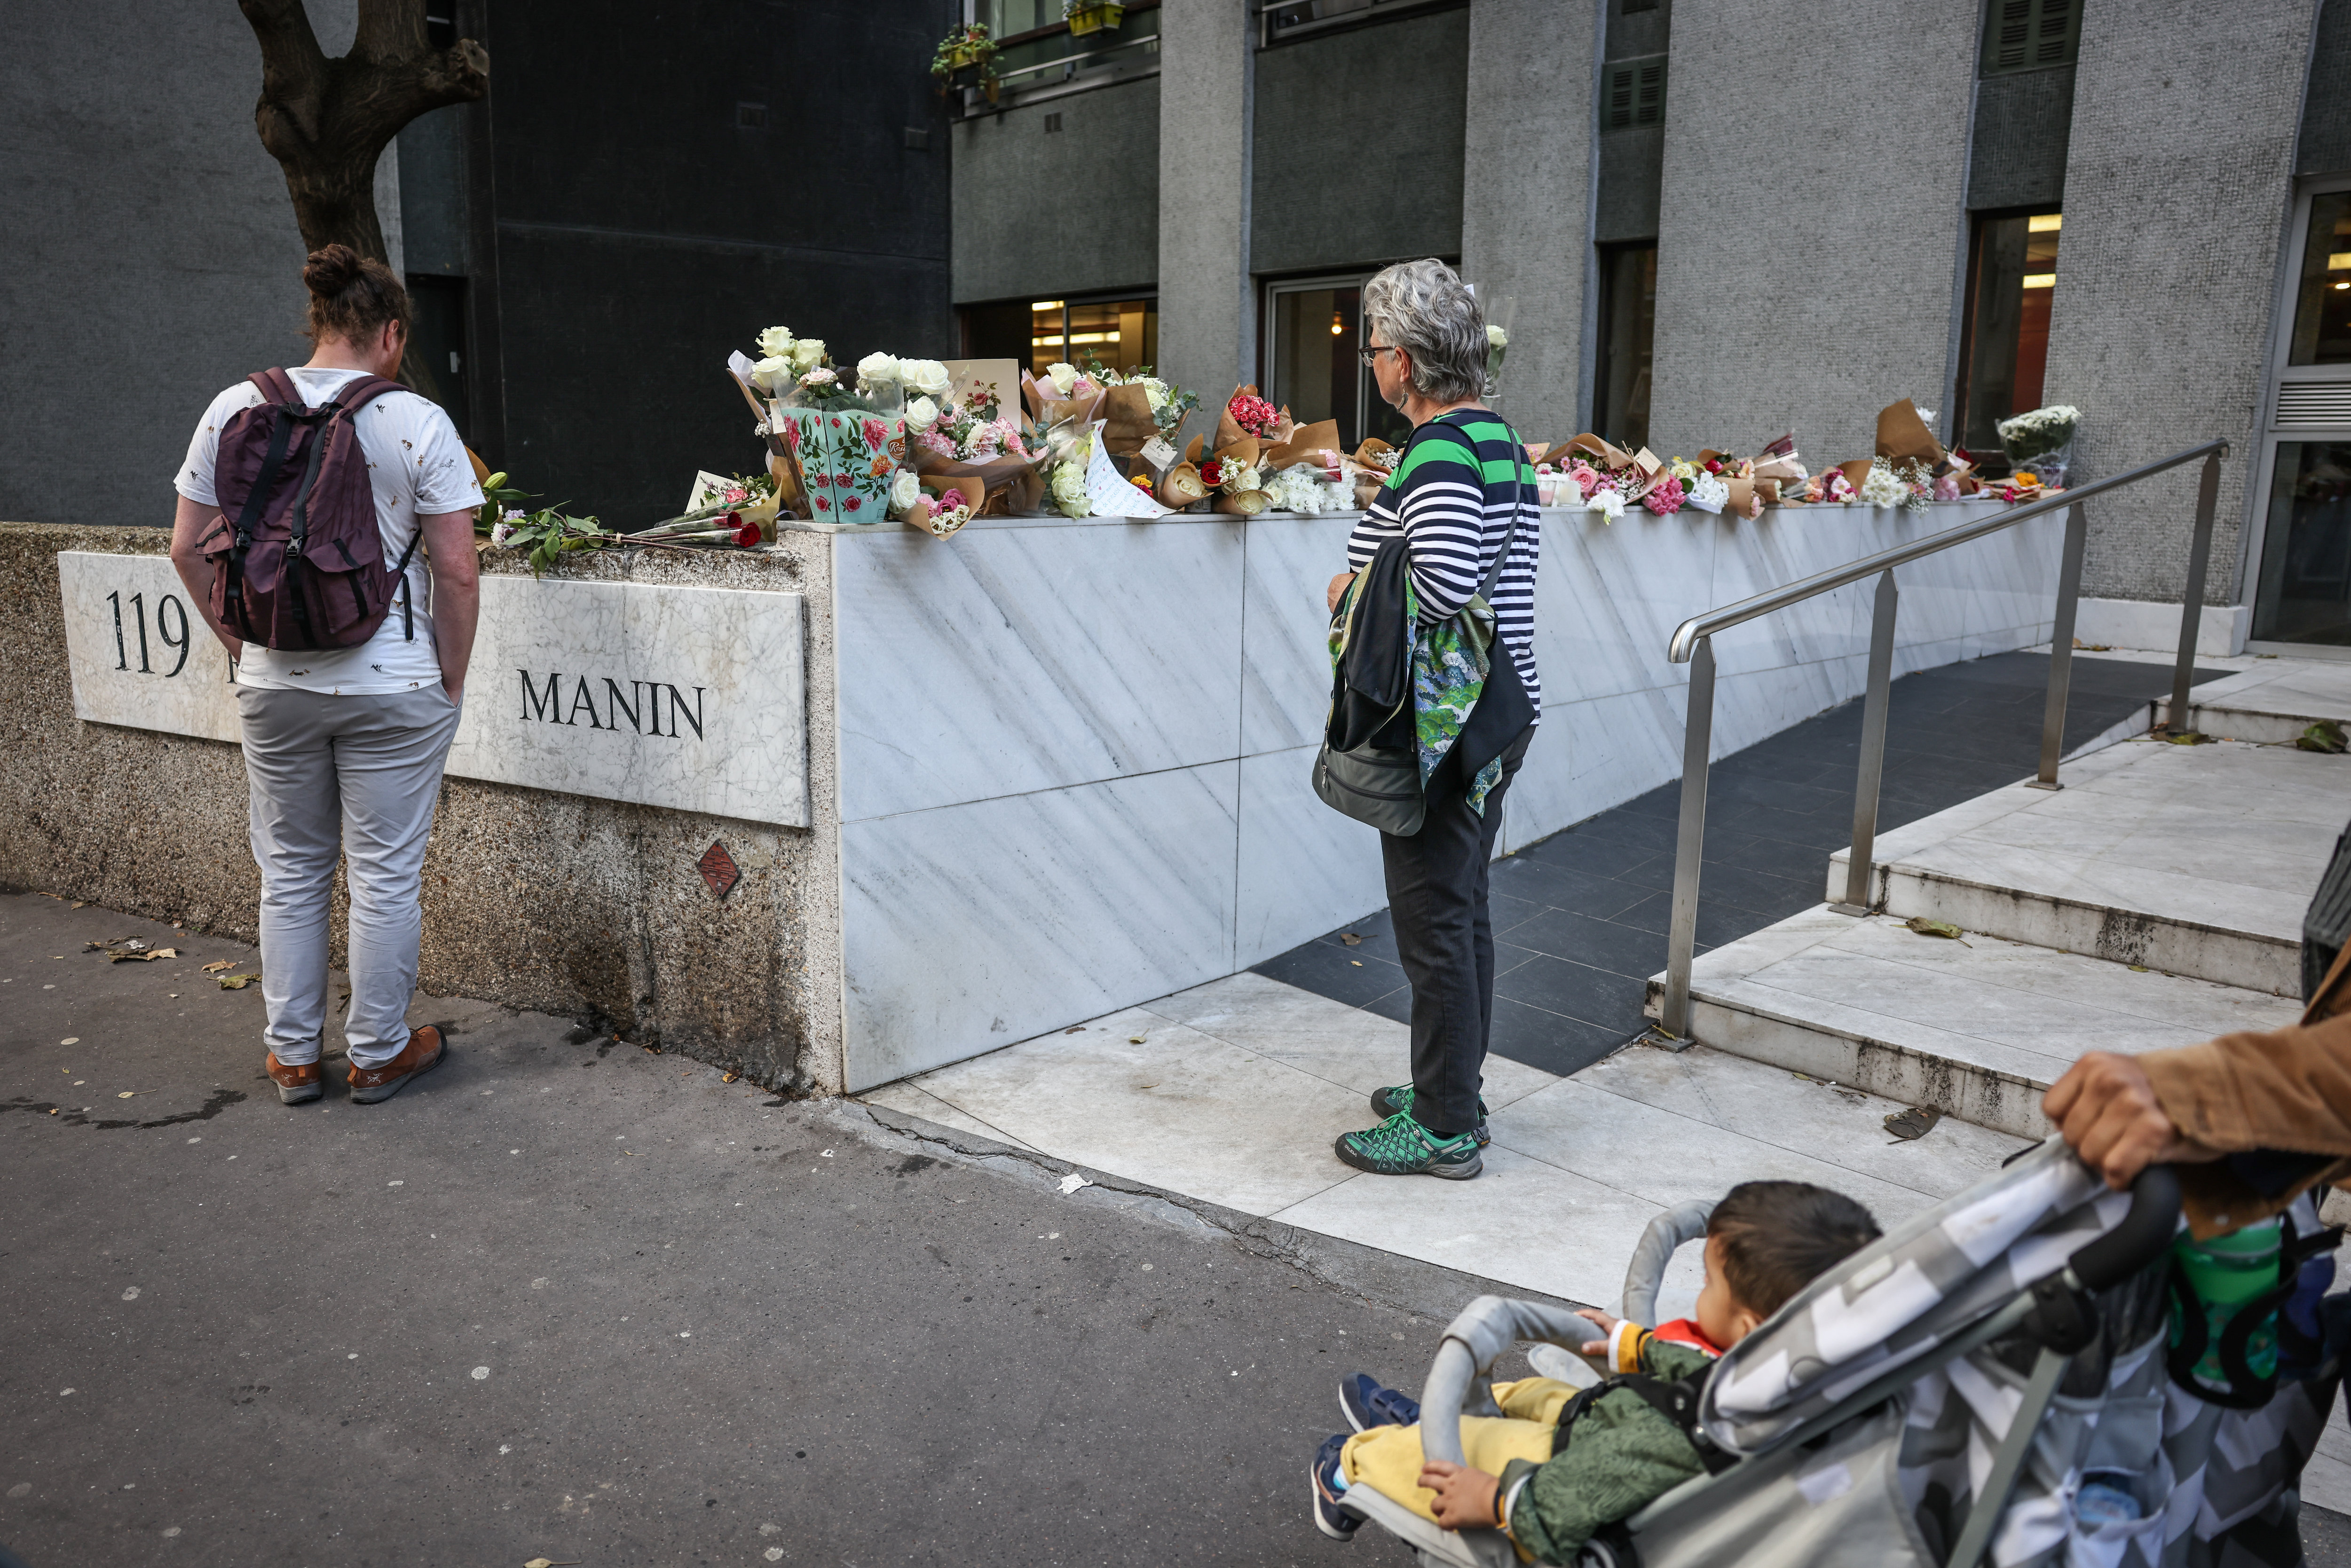 Deux jours après le meurtre d'une adolescente de 12 ans, des dizaines de personnes sont venus déposer des bouquets de fleurs afin de lui rendre hommage devant son immeuble. Photo LP / Fred Dugit